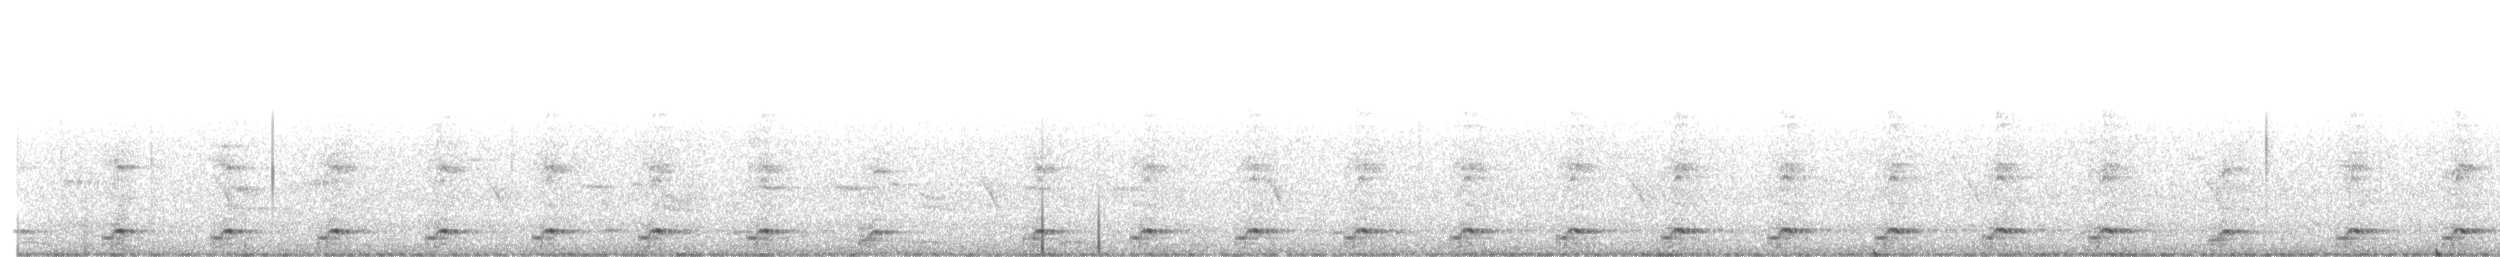 Ak Göğüslü Suyelvesi - ML620053141